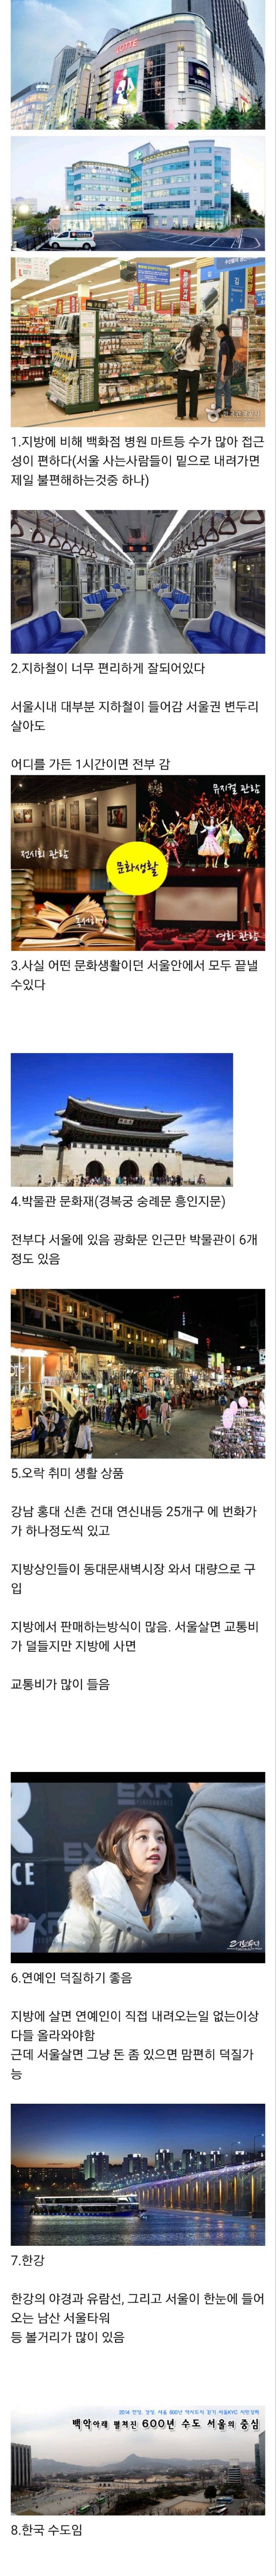 서울이 살기 편하고 좋은이유...서울의 장점..jpg | 인스티즈